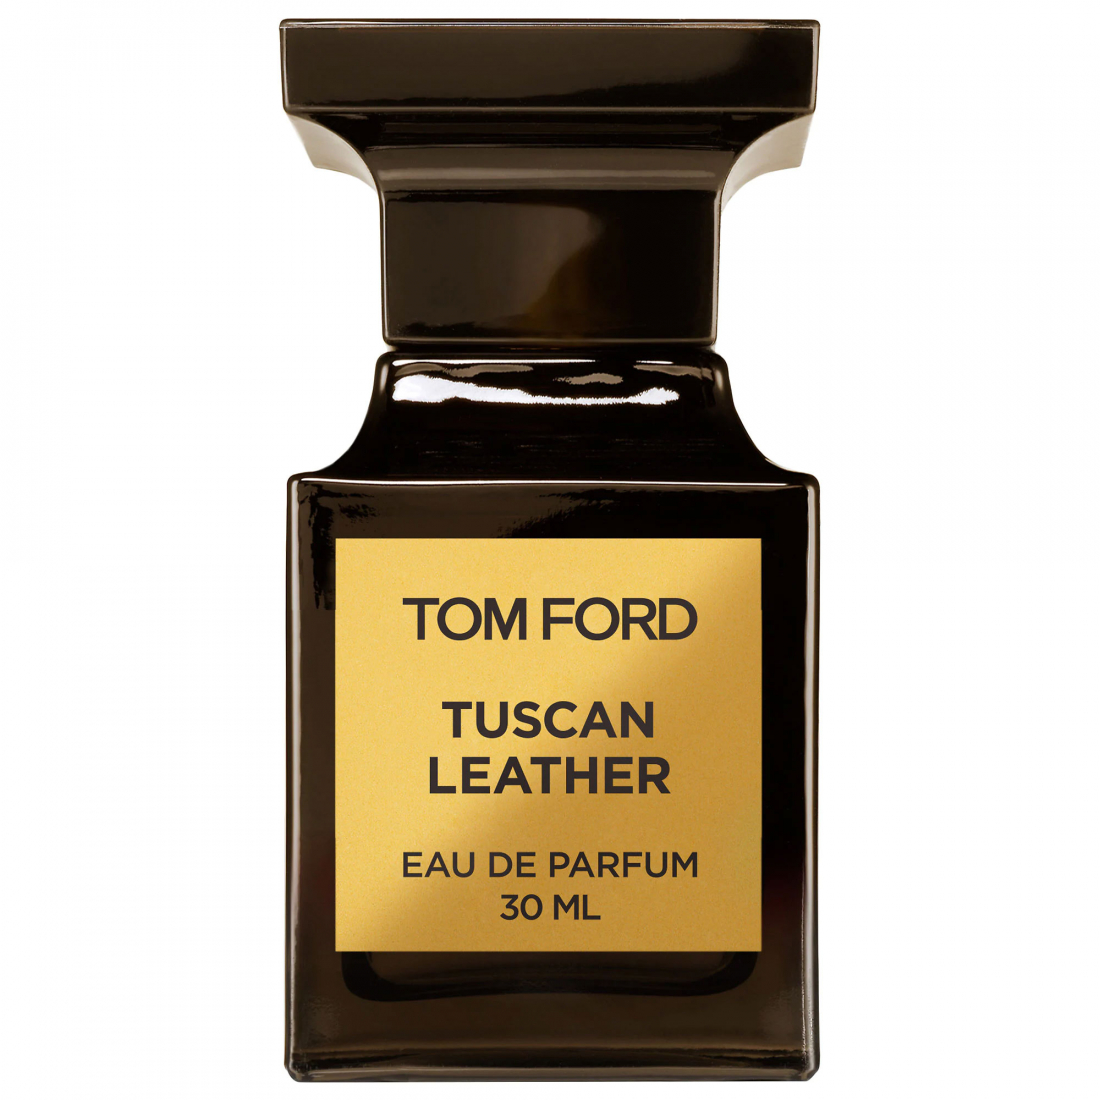 'Tuscan Leather' Eau de parfum - 30 ml